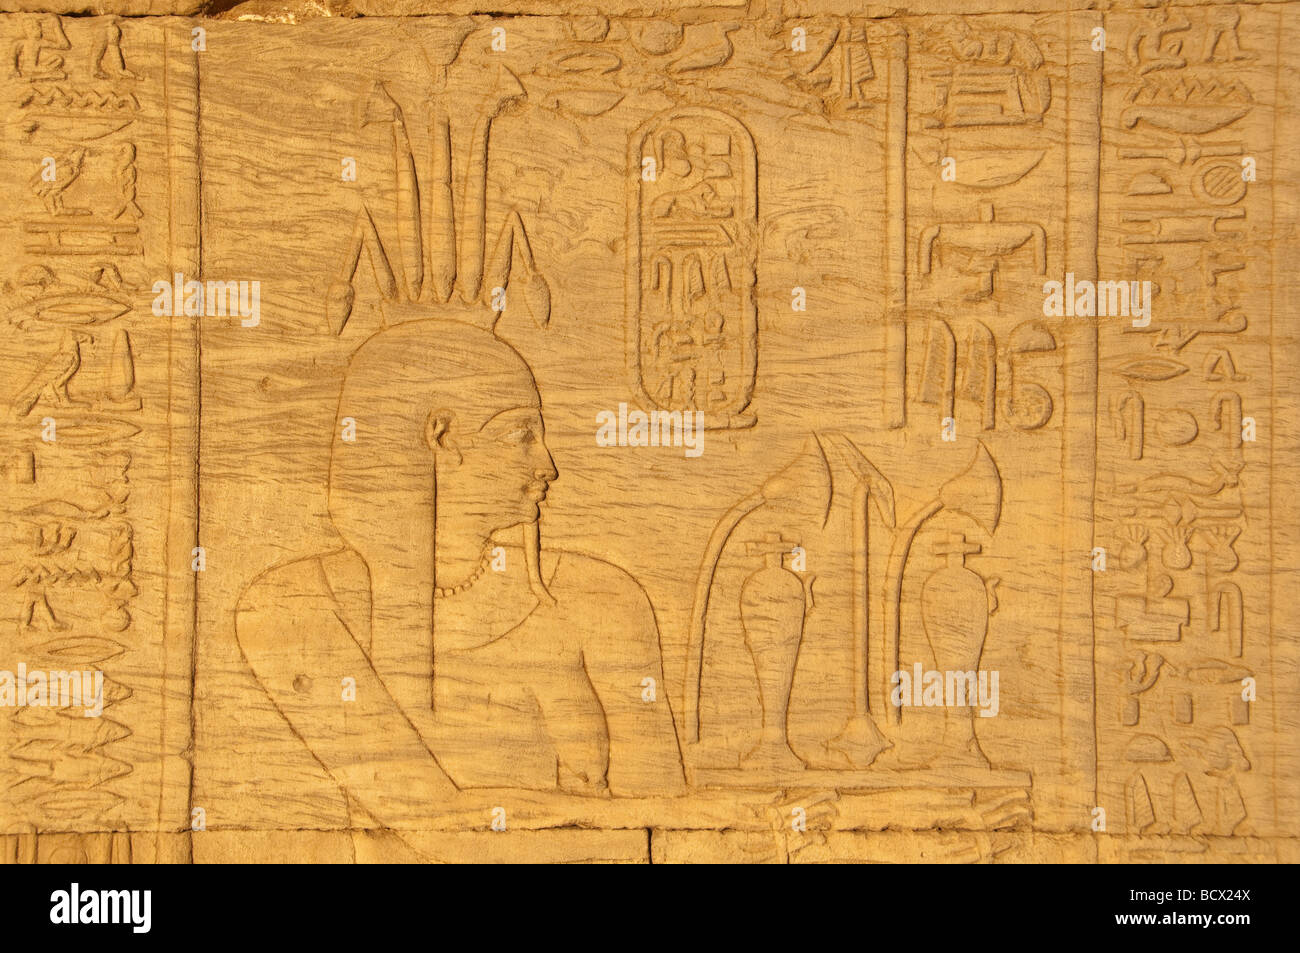 Egipto al templo de Kom Ombo jeroglífico tallado faraón socorro vistiendo la corona de flores de loto Foto de stock